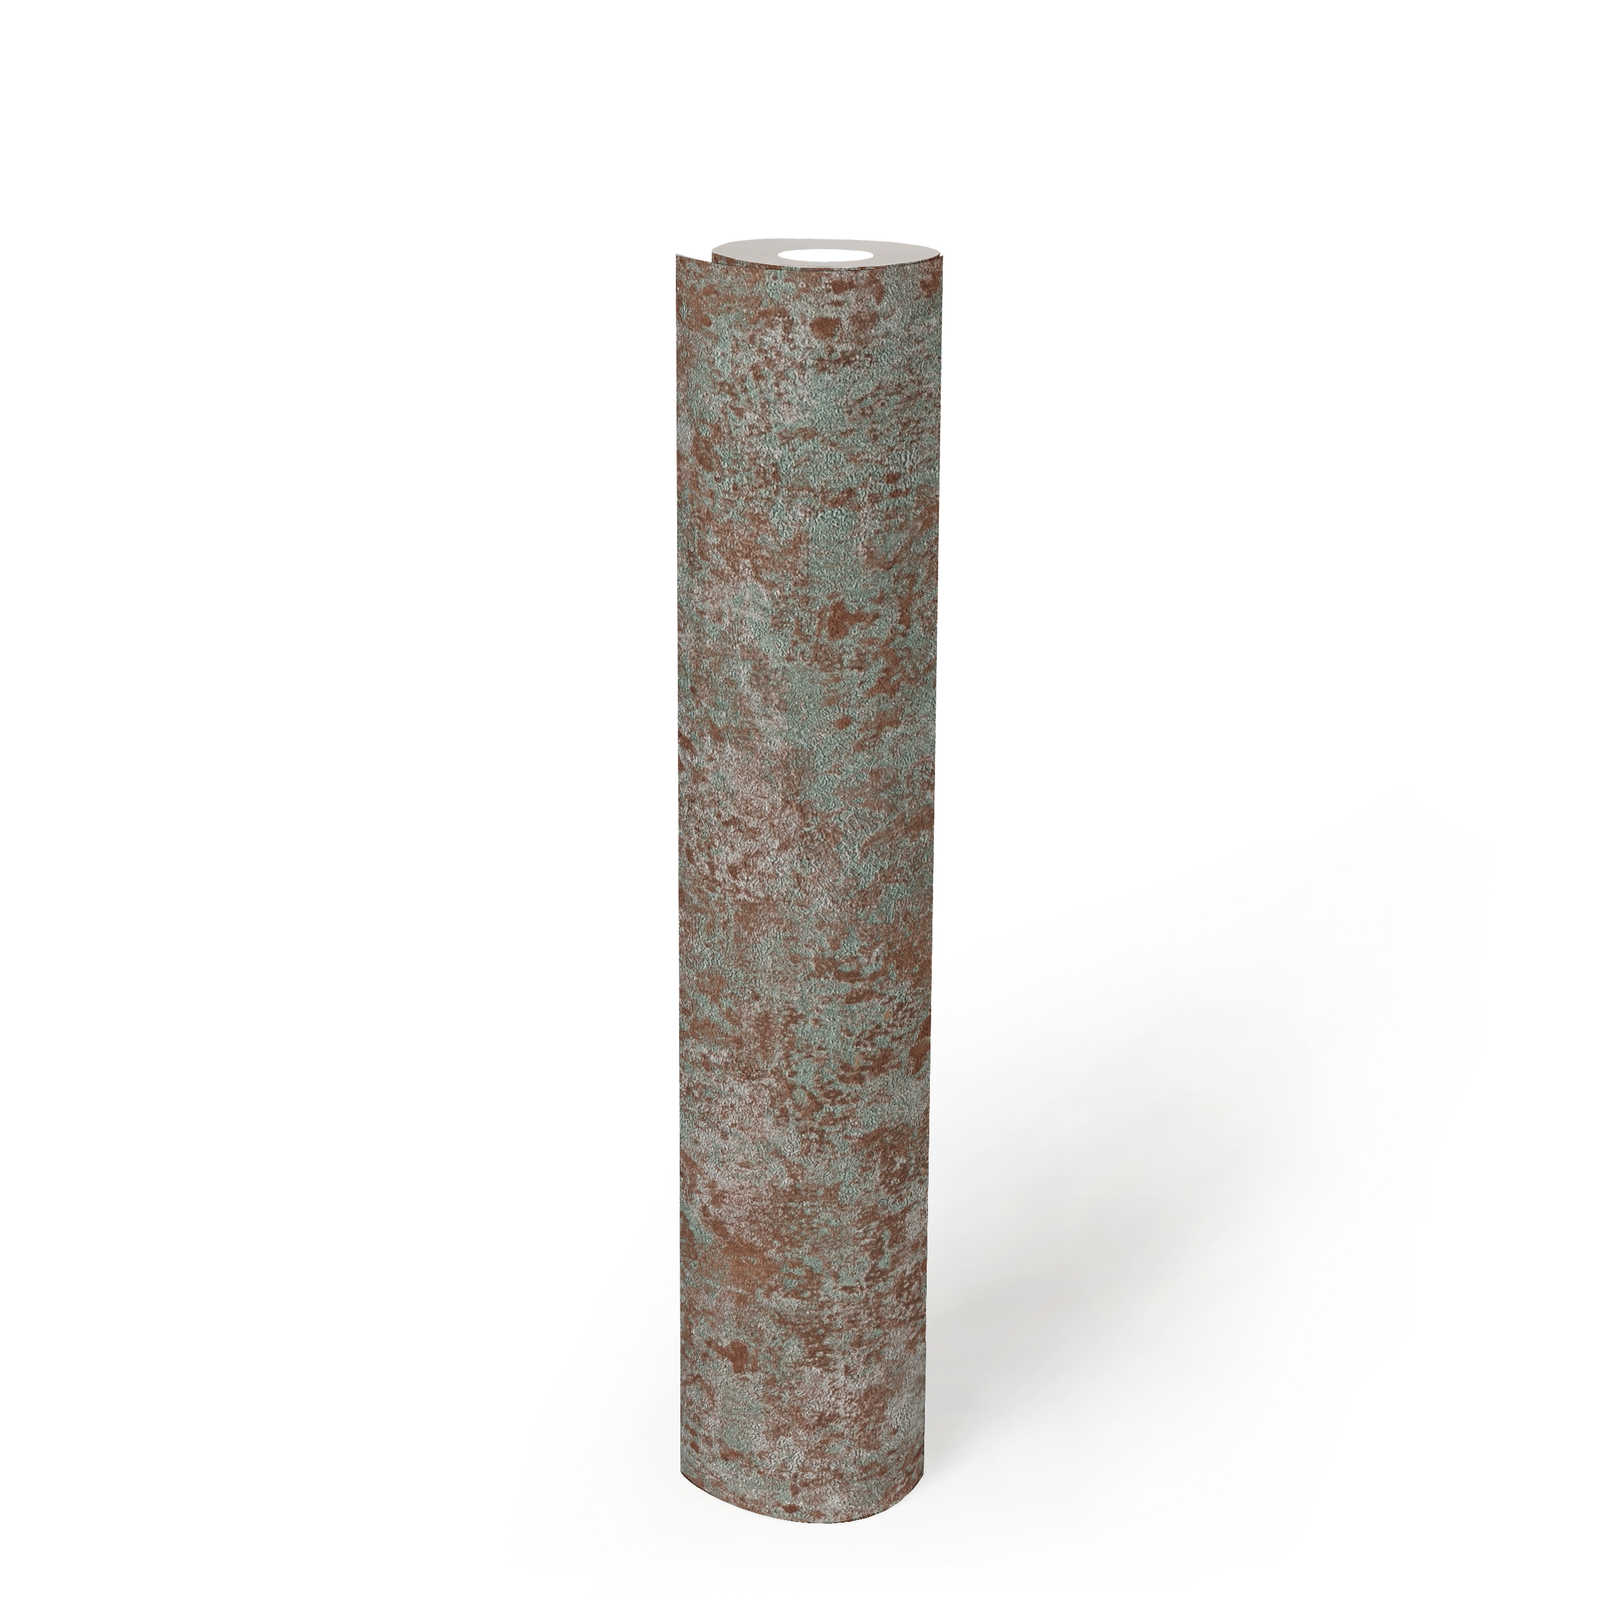             Rostoptik Vliestapete mit Glanzeffekt – Braun, Grün, Silber
        